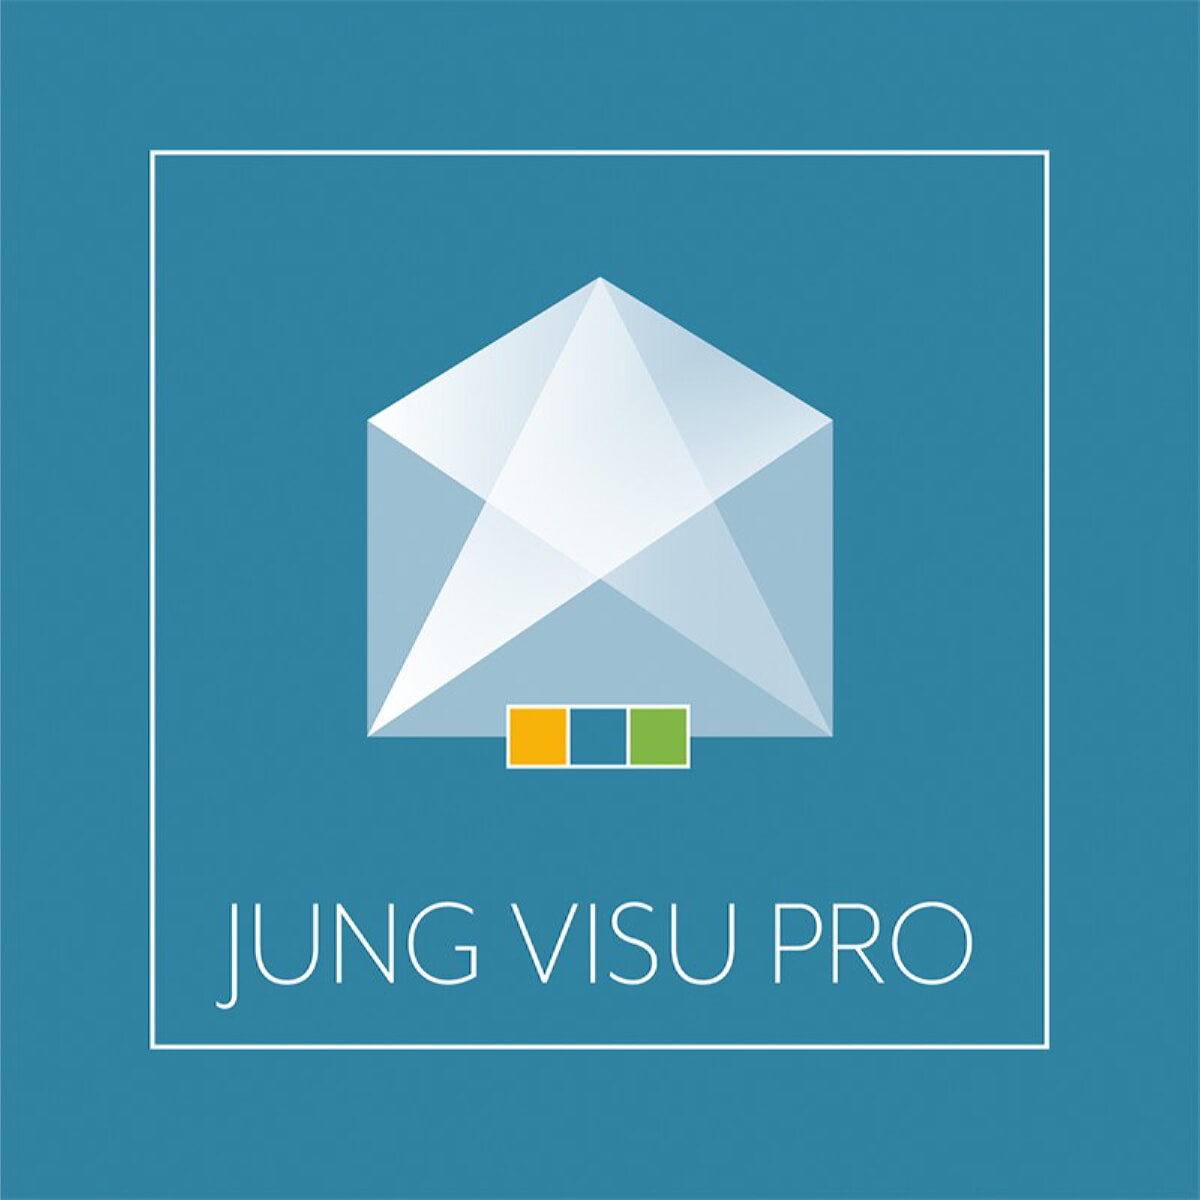 Jung Visu Pro Software, Planerversion JVP-P